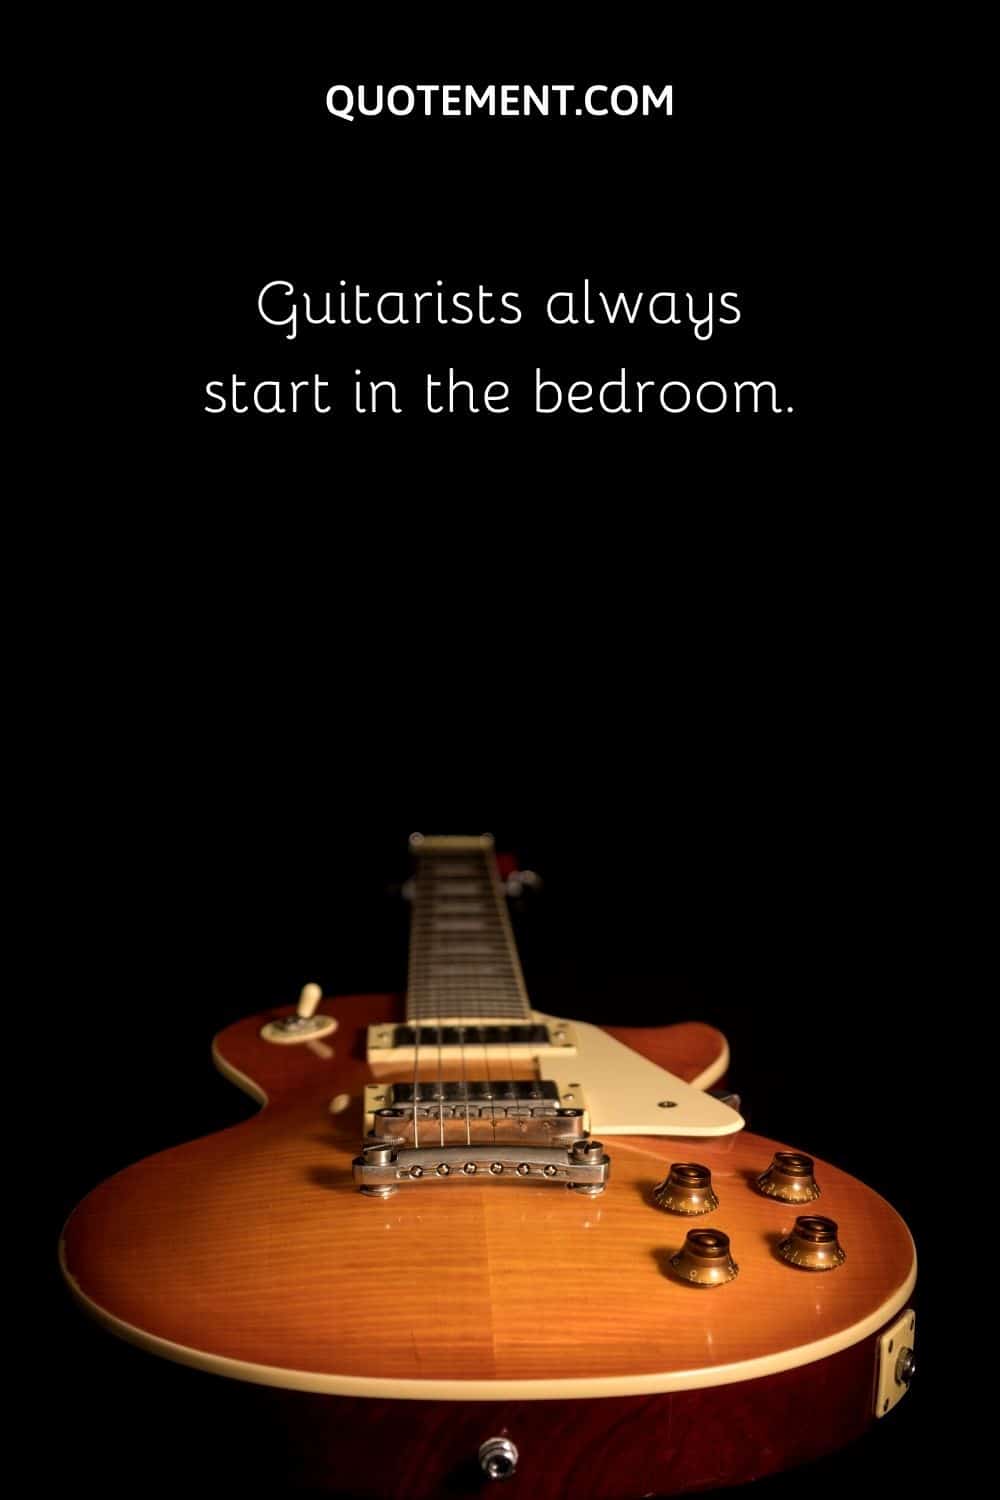 Guitarists always start in the bedroom.